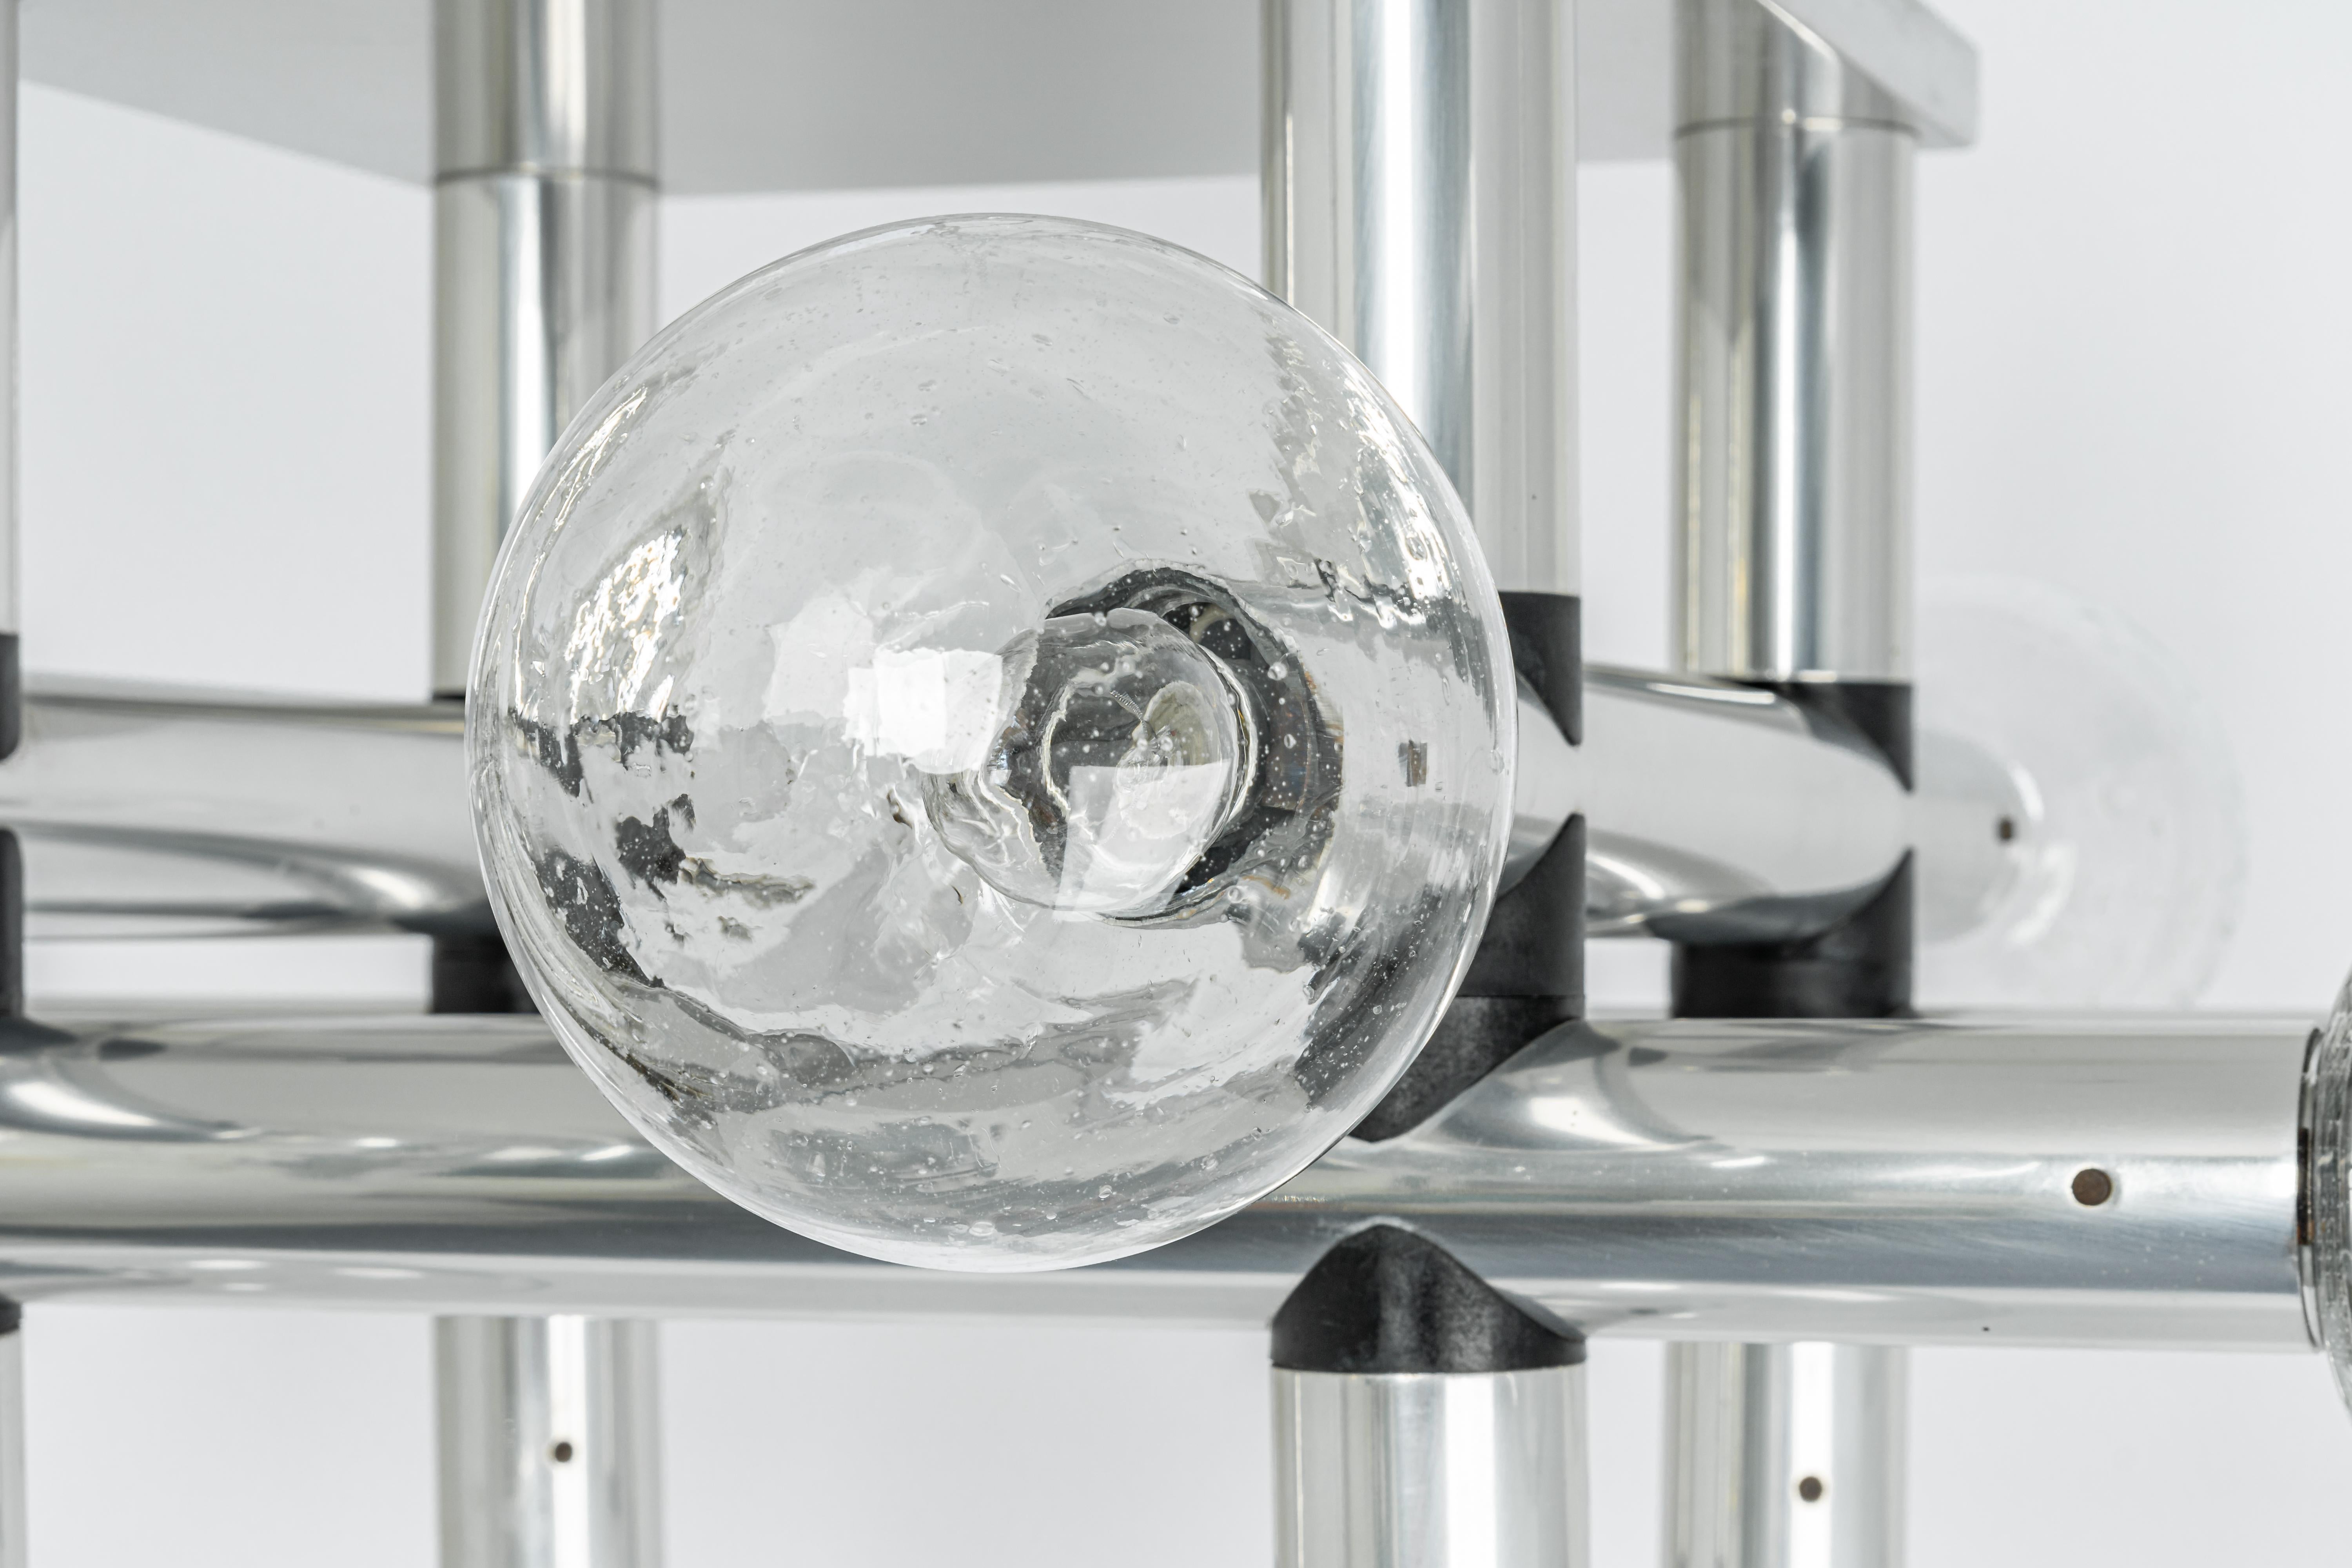 Exklusives poliertes Aluminium mit 12 Gläsern (mundgeblasen)
Atemberaubende Sputnik-Pendelleuchte, entworfen von Kalmar Leuchten in den 1970er Jahren.

Fassungen: Es werden 12x E14 Glühbirnen benötigt.
Glühbirnen sind nicht enthalten. Es ist